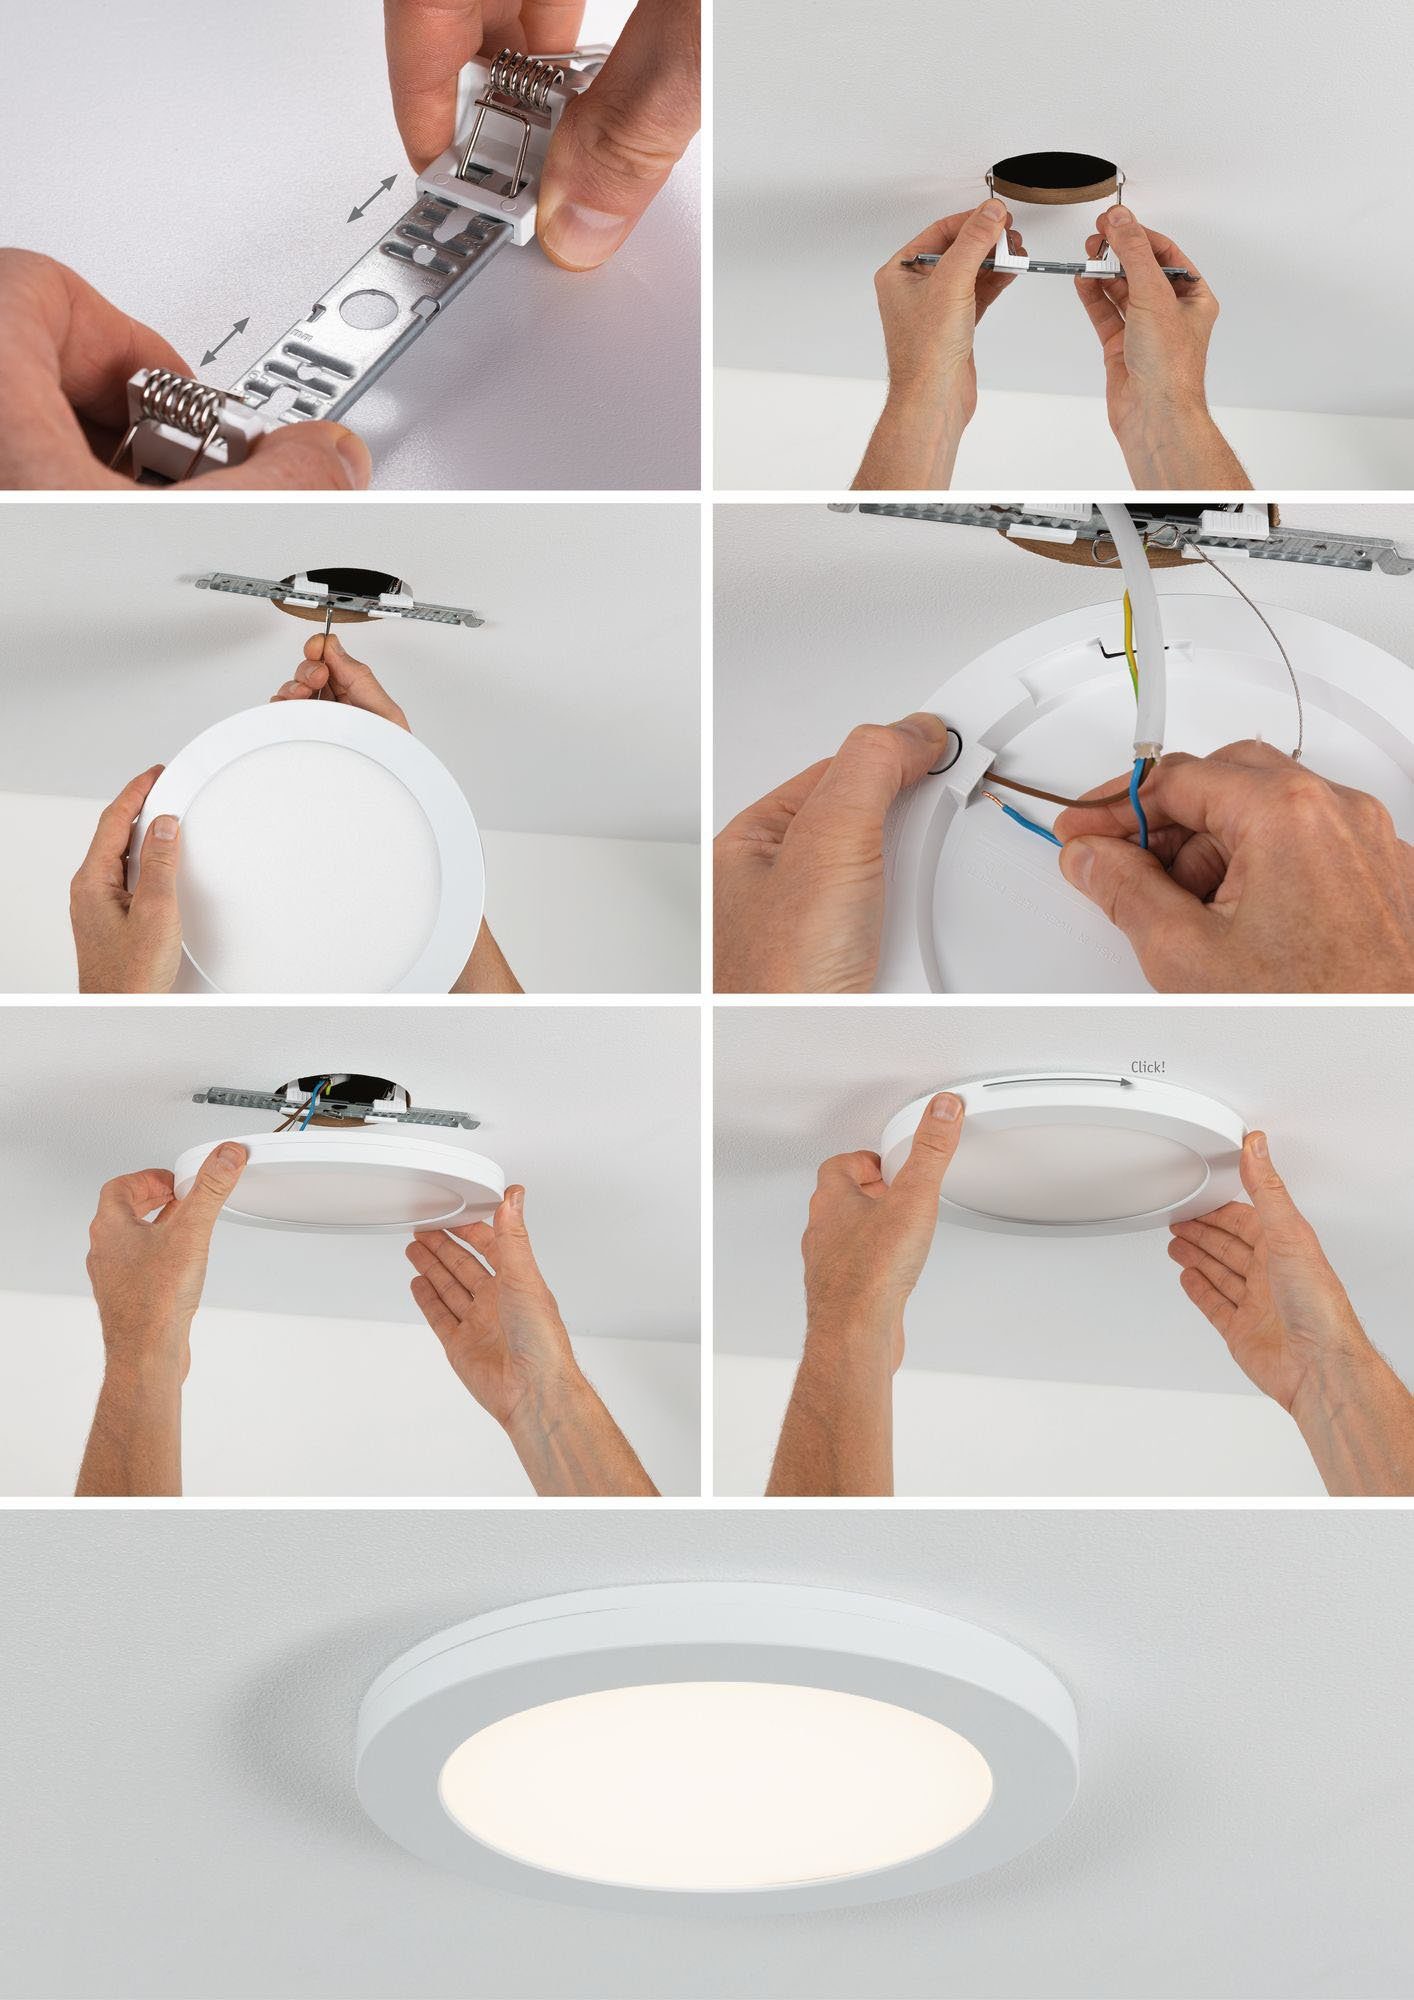 Paulmann LED Einbauleuchte Cover-it, Bewegungsmelder, Neutralweiß, integriert, LED LED-Modul fest